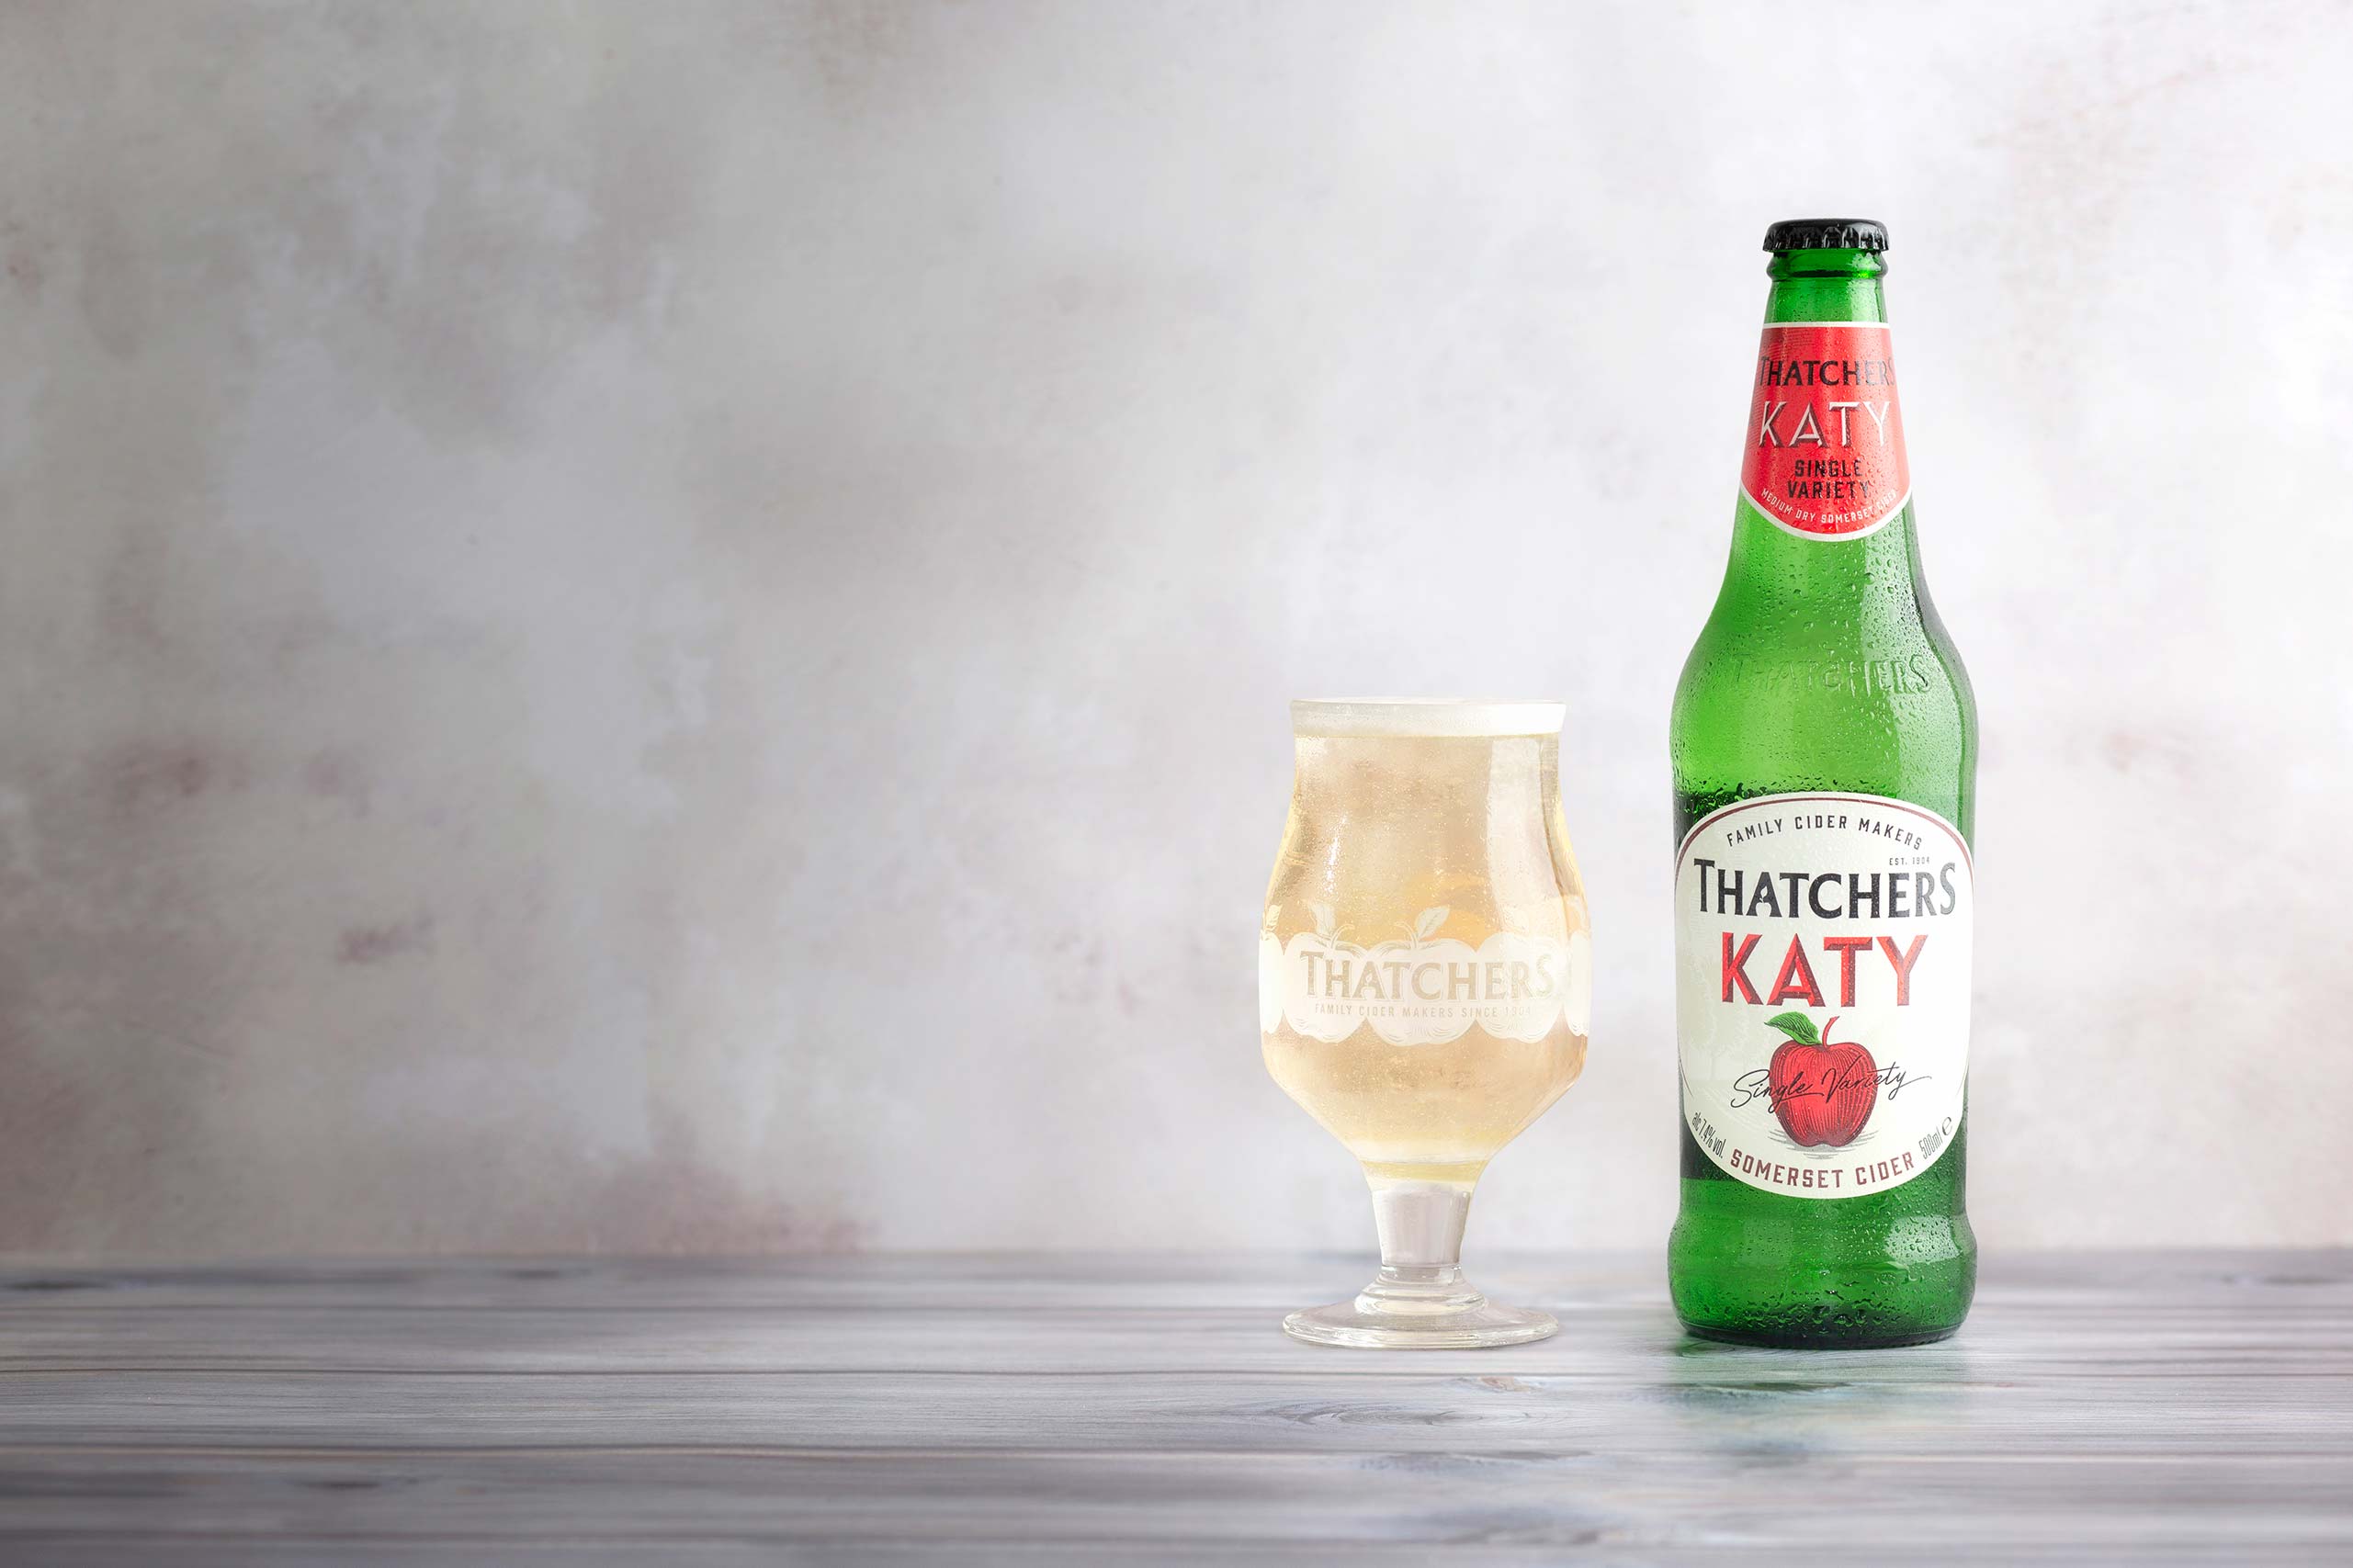 Thatchers Katy 0,5l - Medium dry Somerset Cider mit 7,4% Vol. - Apfelwein